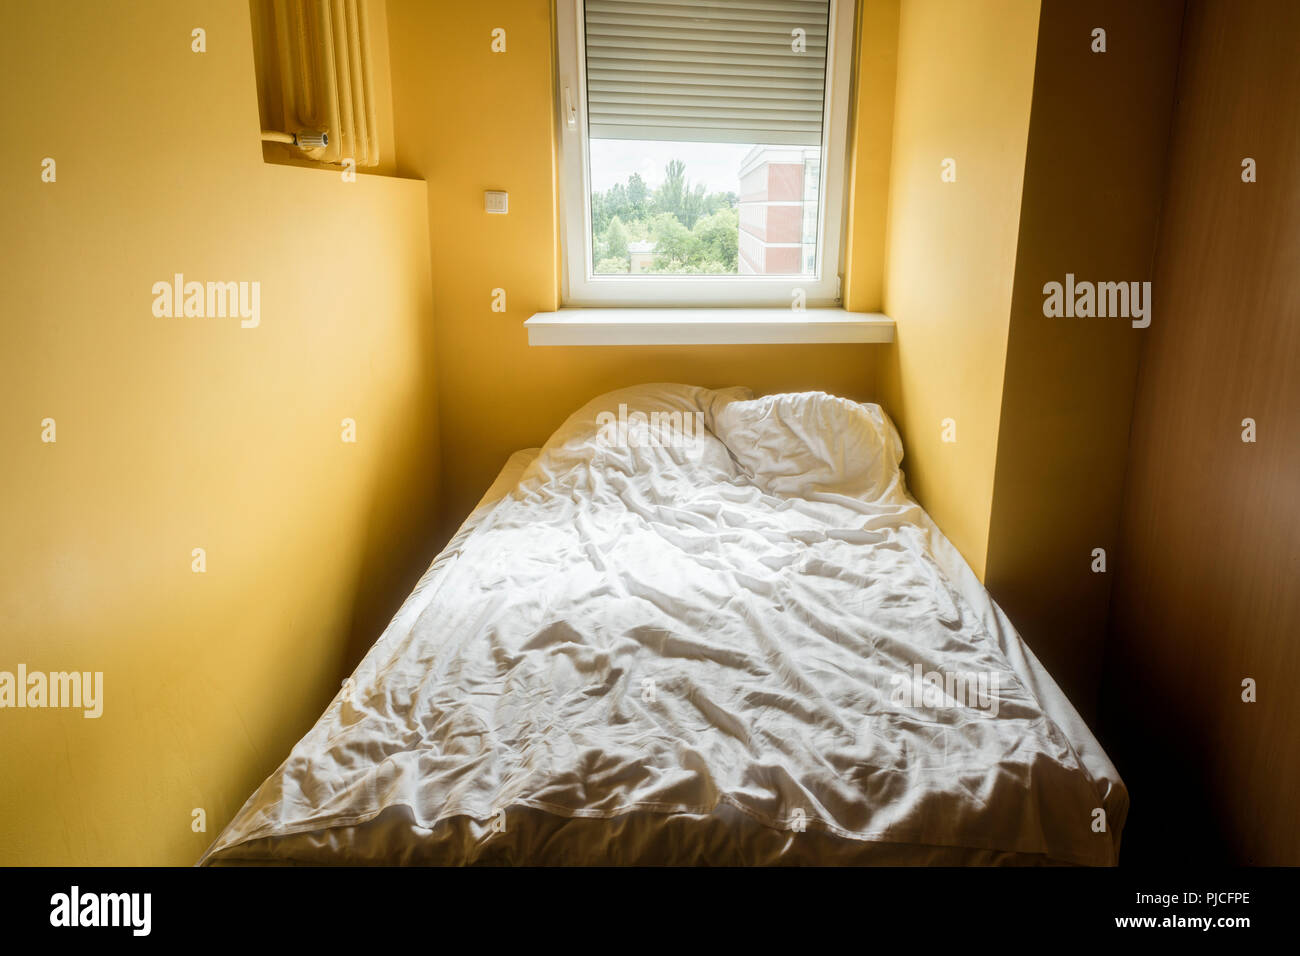 Schmale gelbe Schlafzimmer Innenraum mit Fenster Licht und zerknittert weisse Decke auf dem Bett Stockfoto